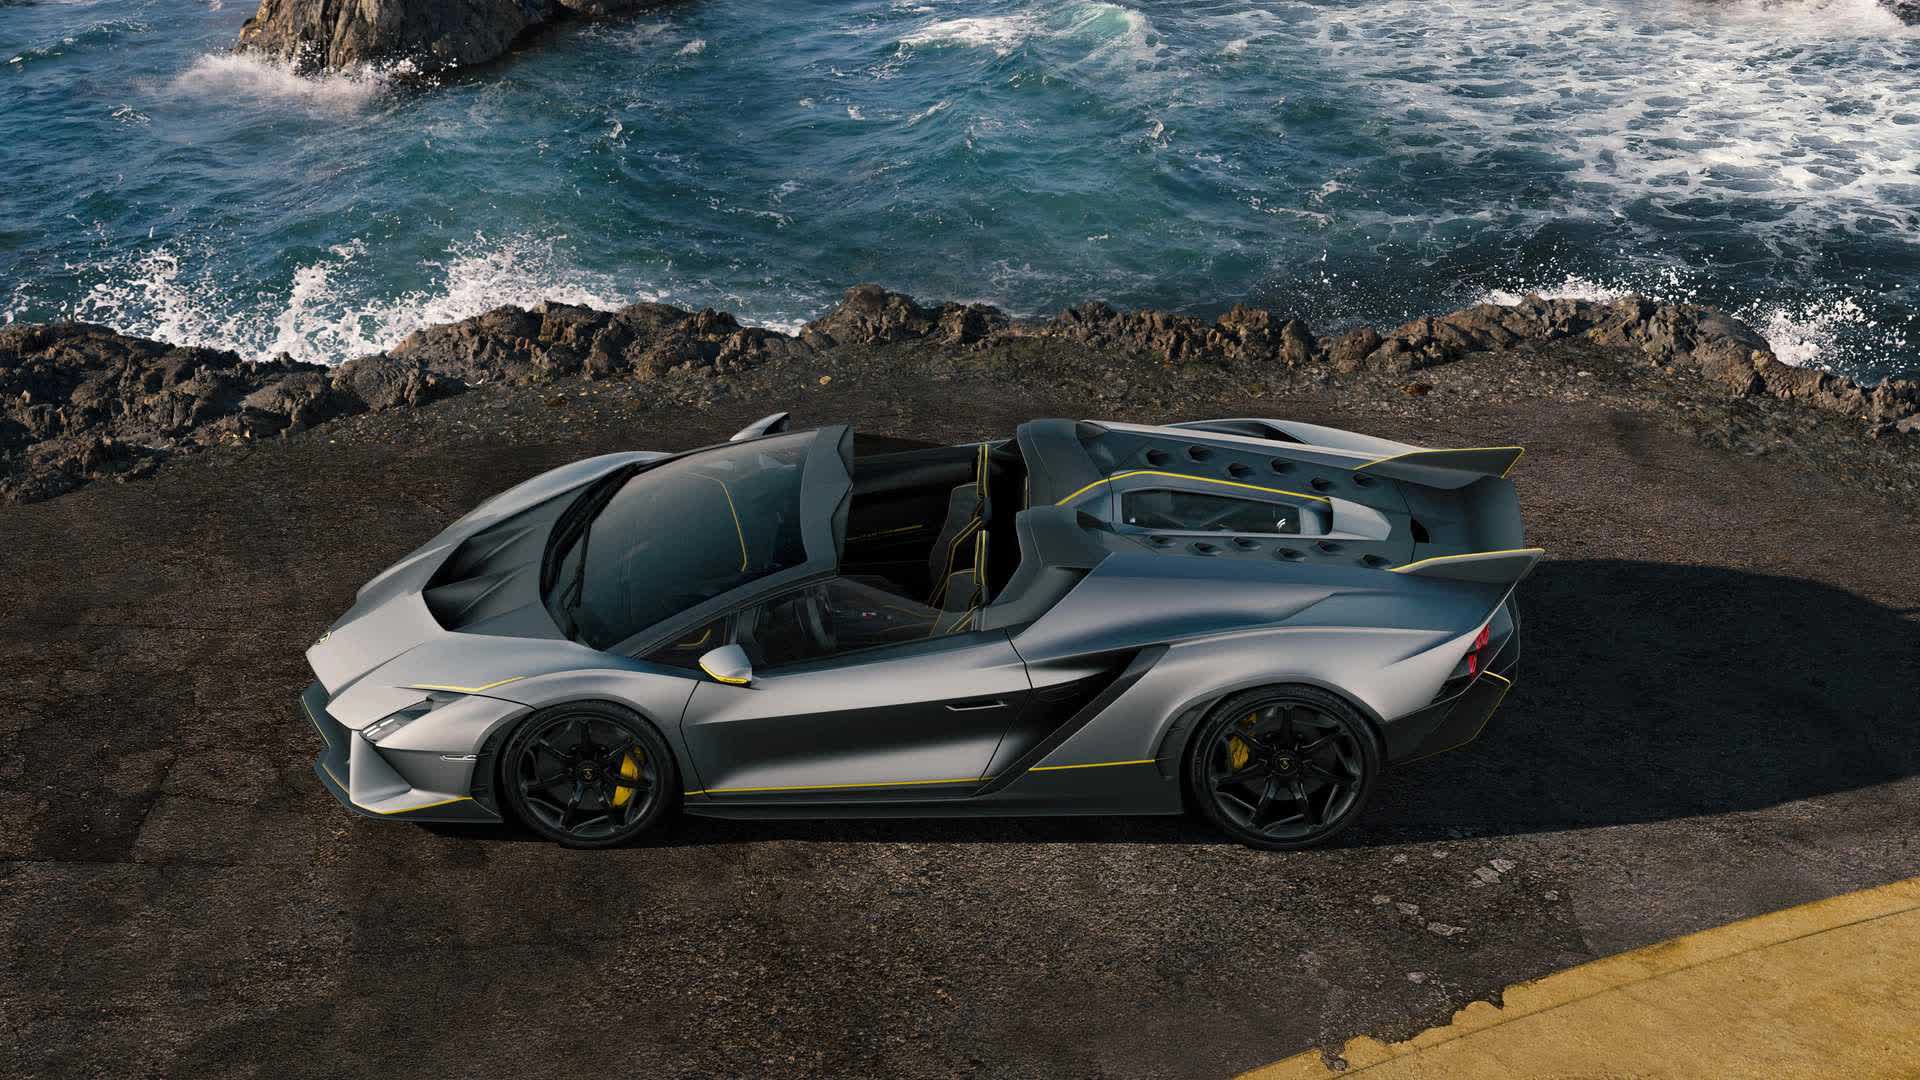 Lamborghini ra mắt bộ đôi siêu xe V12 chạy xăng cuối cùng, sau đây sẽ toàn siêu xe điện êm ru chưa biết nẹt pô kiểu gì - ảnh 12